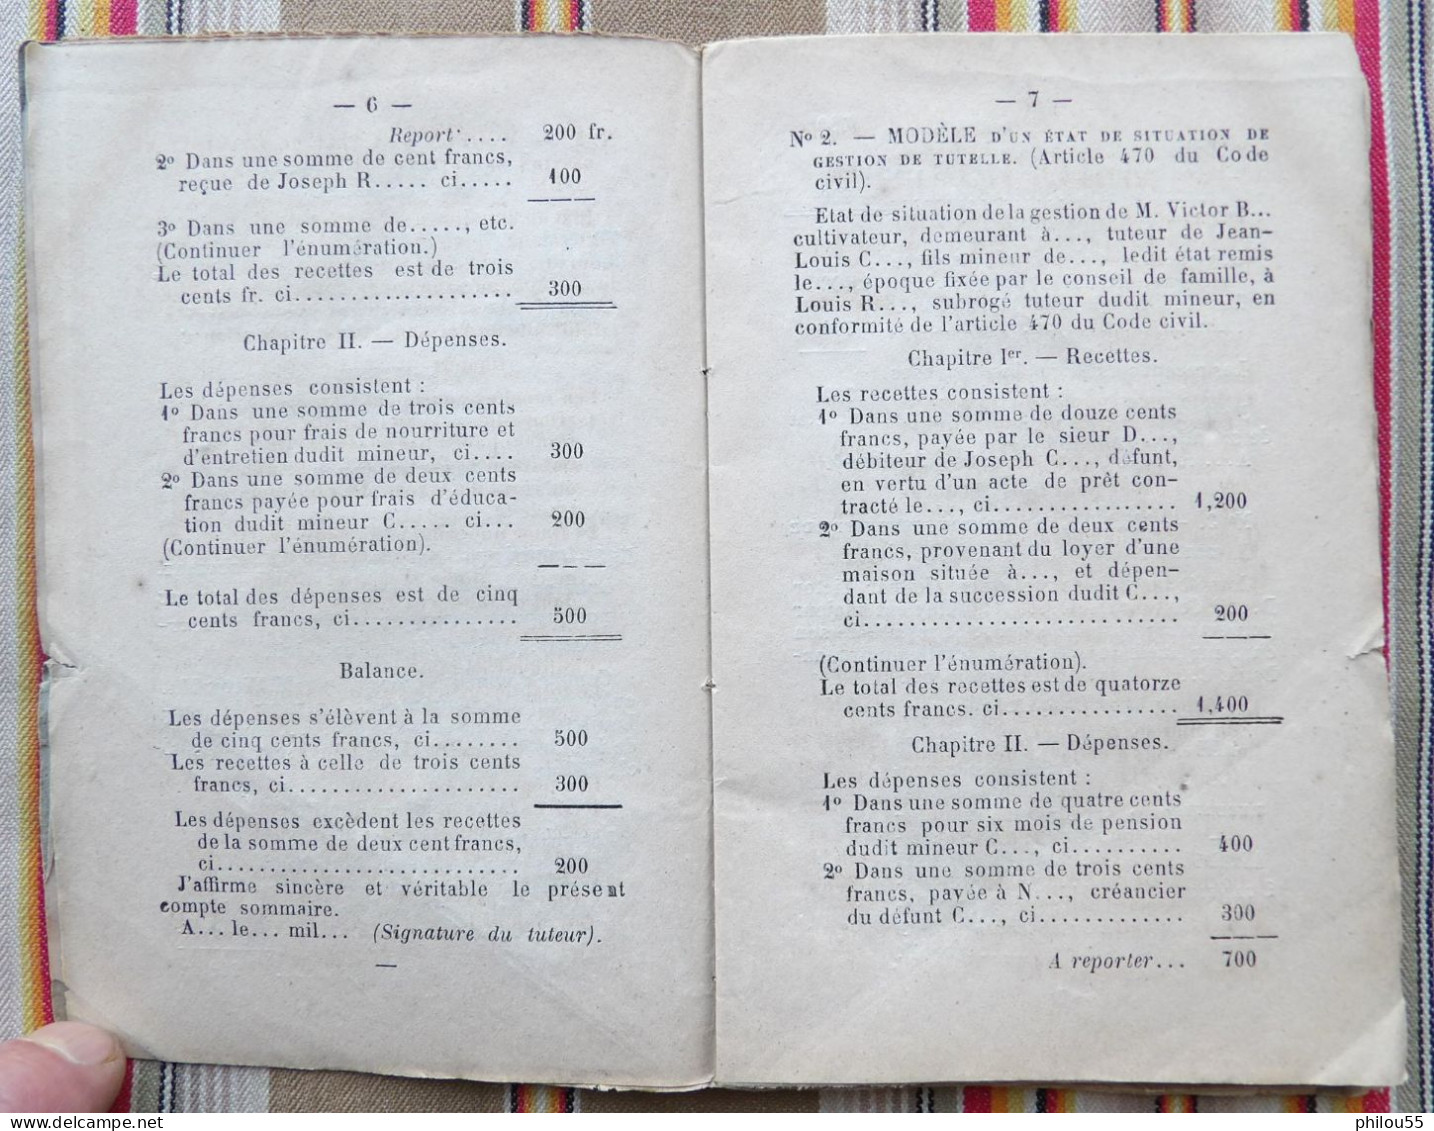 12 RODEZ Ve E. CARRERE Formulaire du Code Civil pour les Actes sous Seing Prive par M. BARTHE 1875